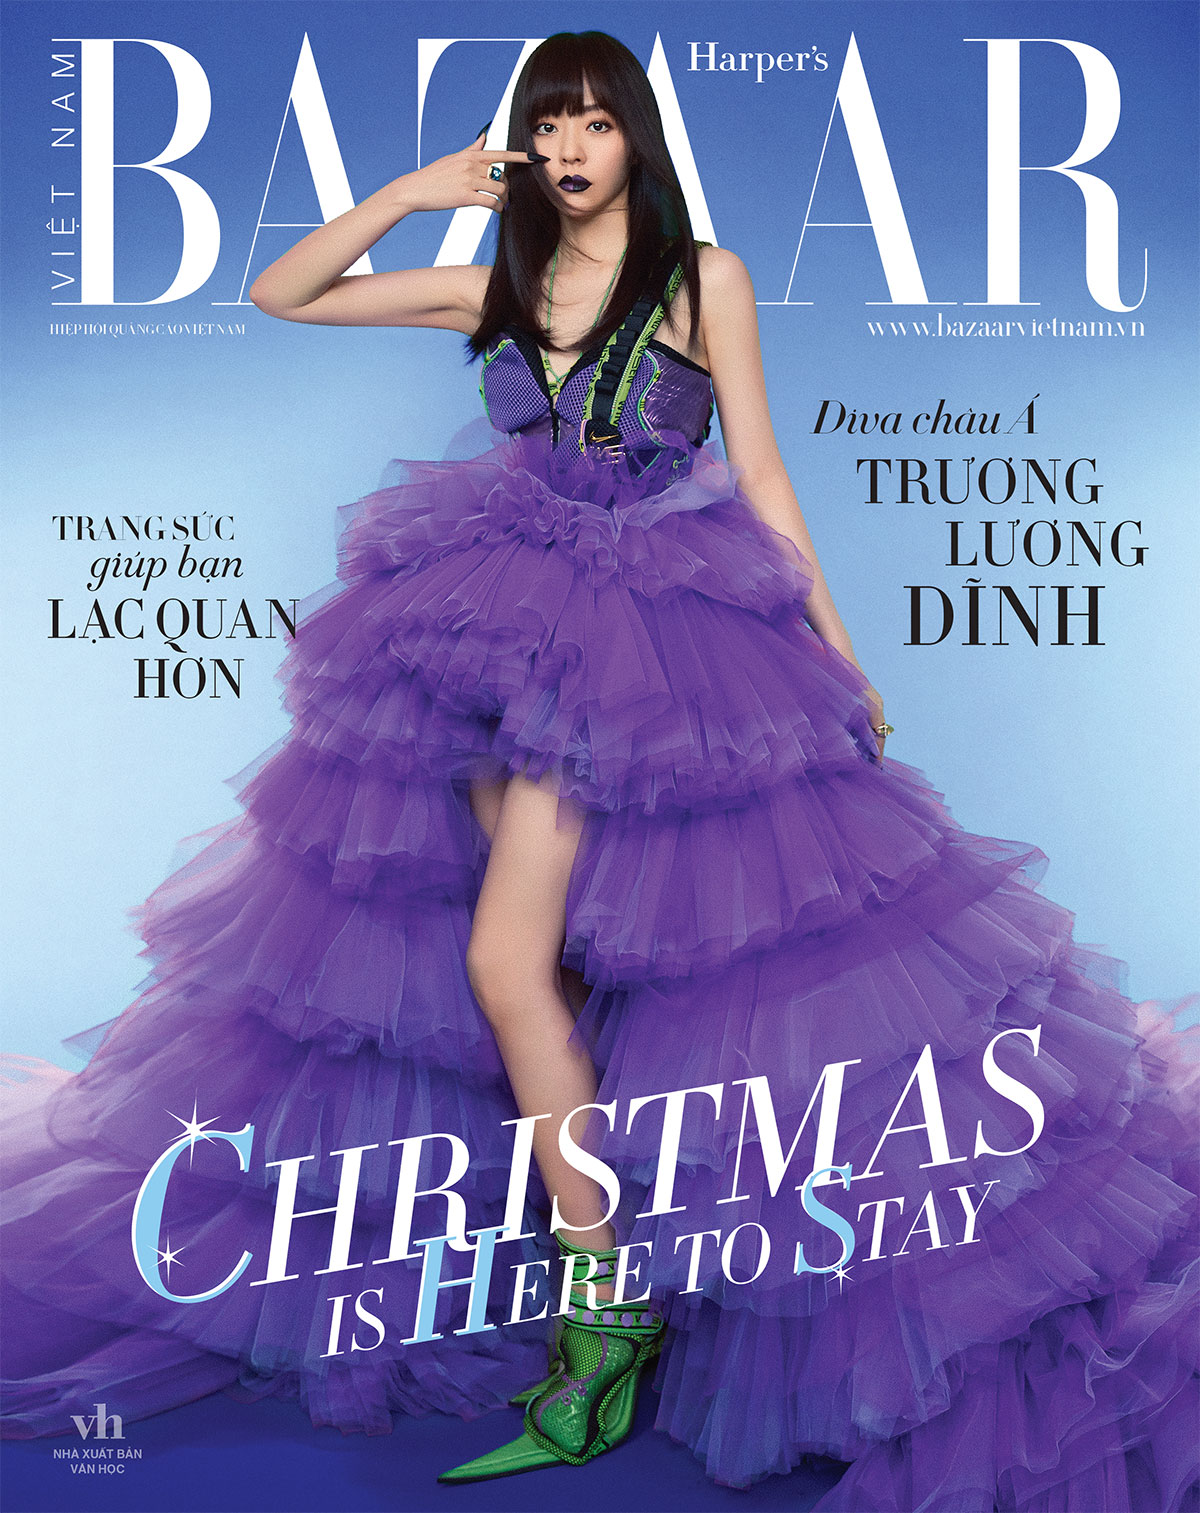 Trương Lương Dĩnh trên bìa Harper's Bazaar Việt Nam 12-2020